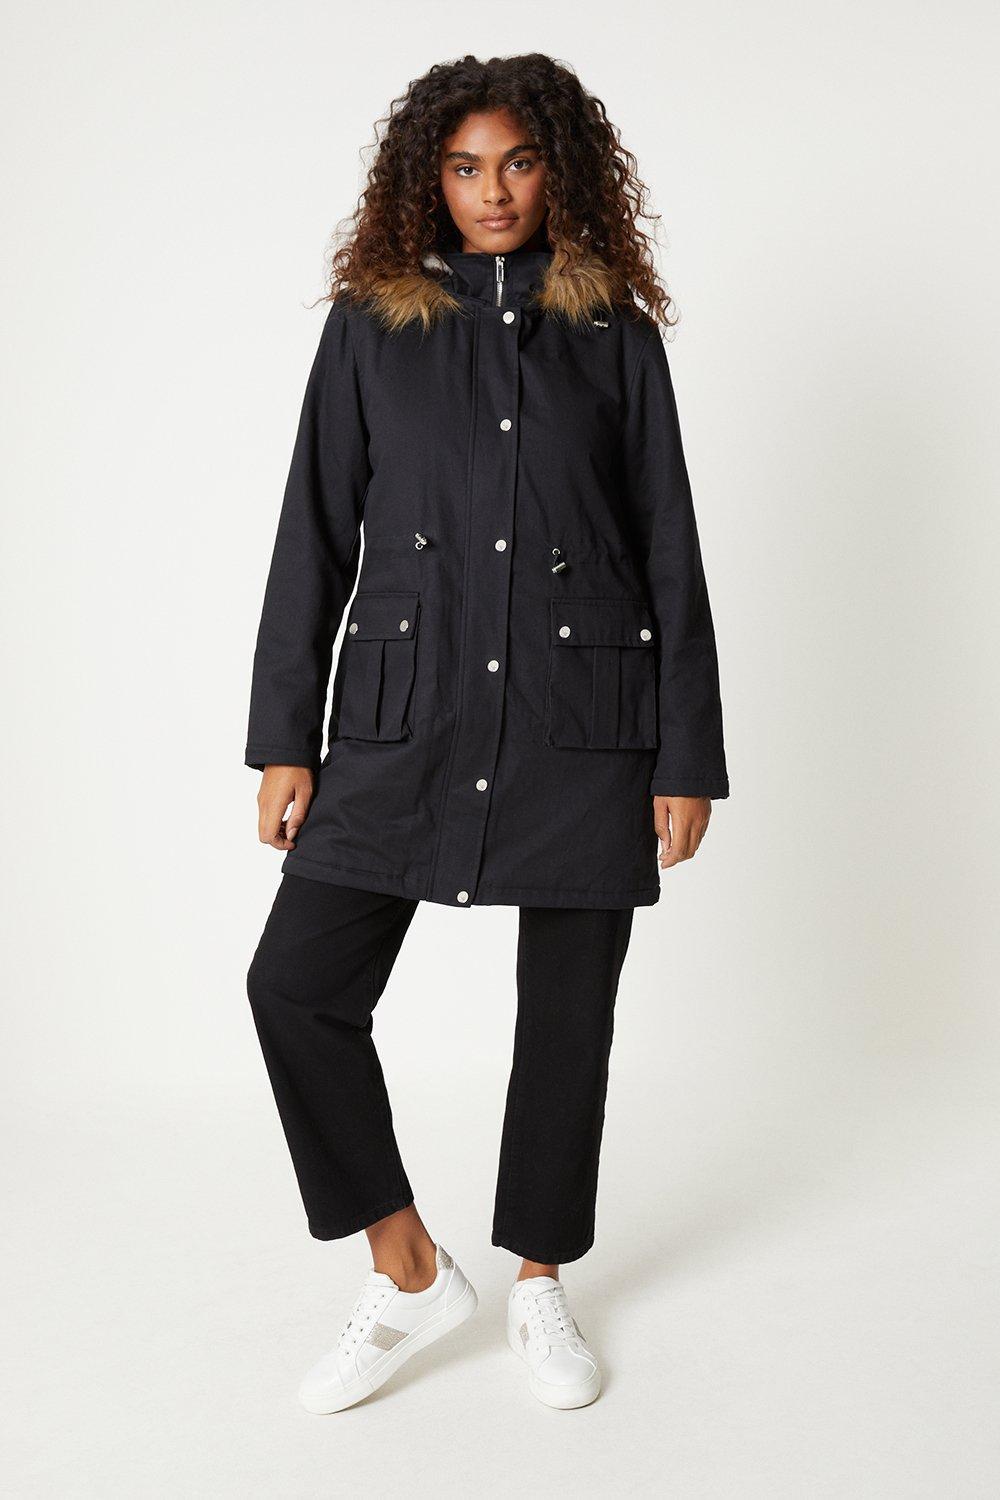 Women’s Fur Hooded Parka Coat - black - XS